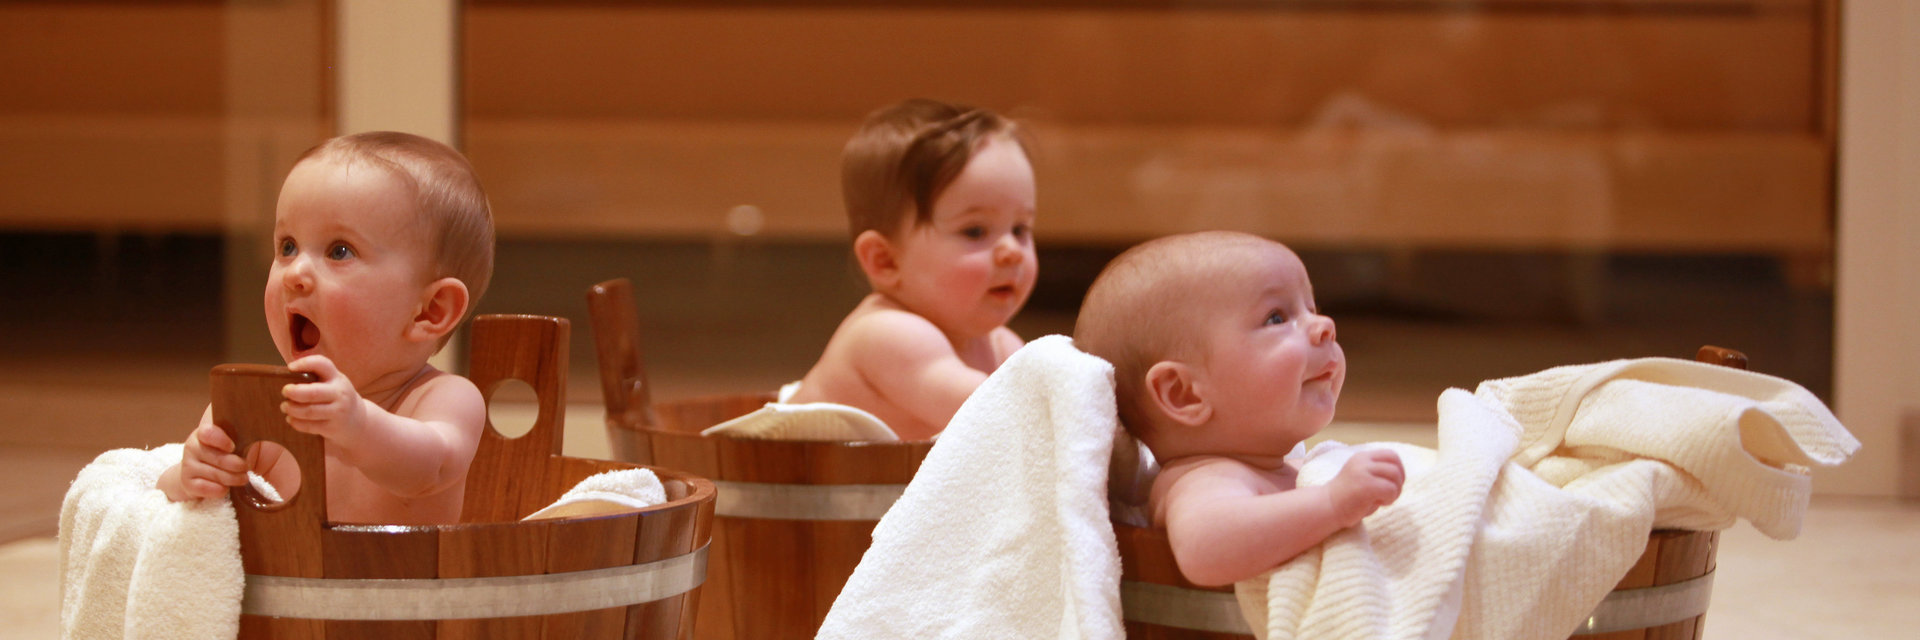 Drei Babys sitzen mit Handtüchern in Saunakübeln aus Holz.